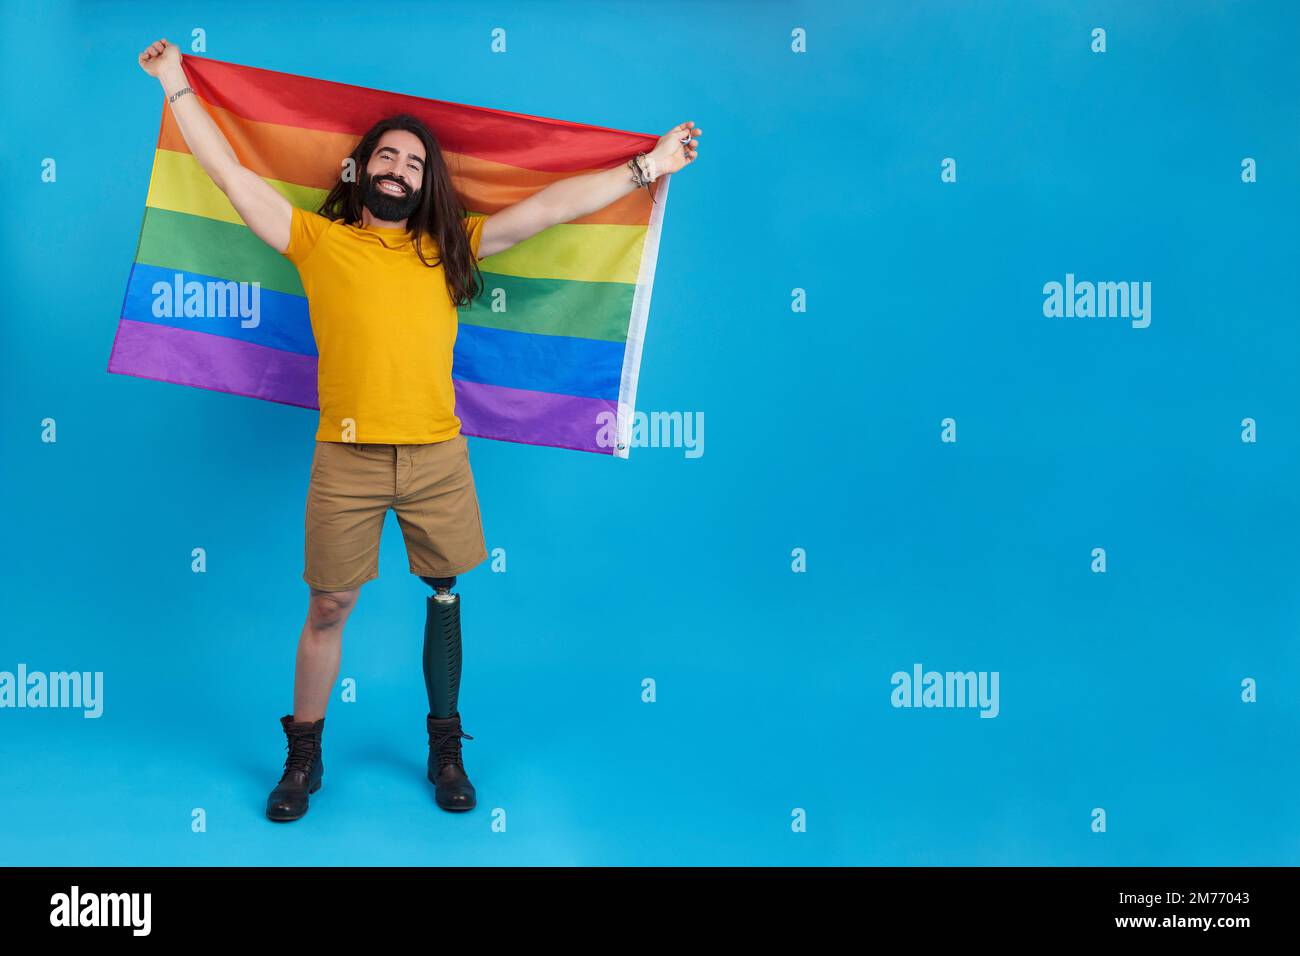 Homme heureux avec une jambe prothétique agitant un drapeau lgbt Banque D'Images